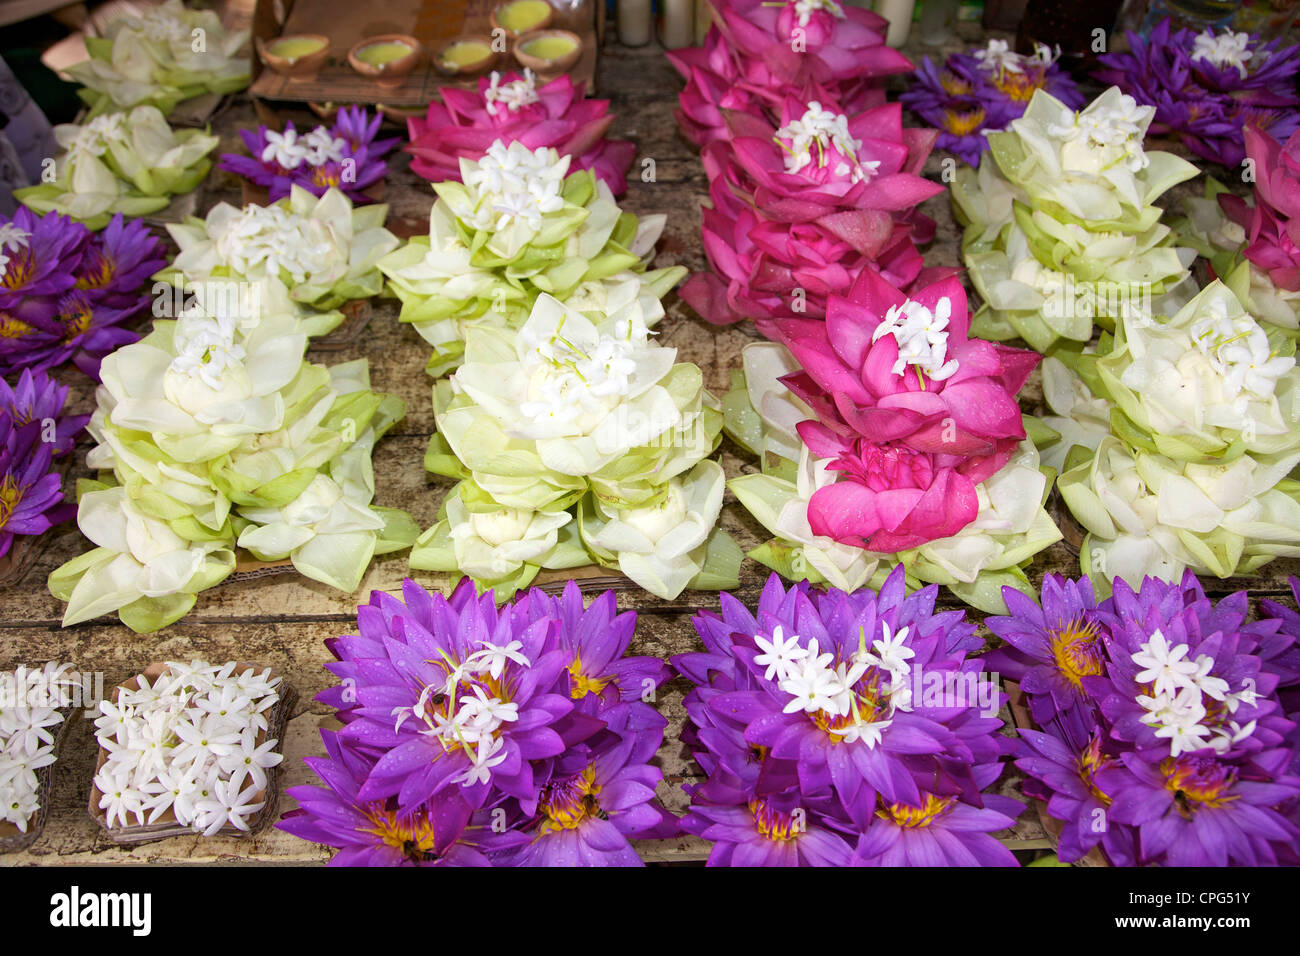 Fiori di loto utilizzato per le offerte, il Tempio della Reliquia del Dente o Sri Dalada Maligawa, Kandy, Sri Lanka Foto Stock